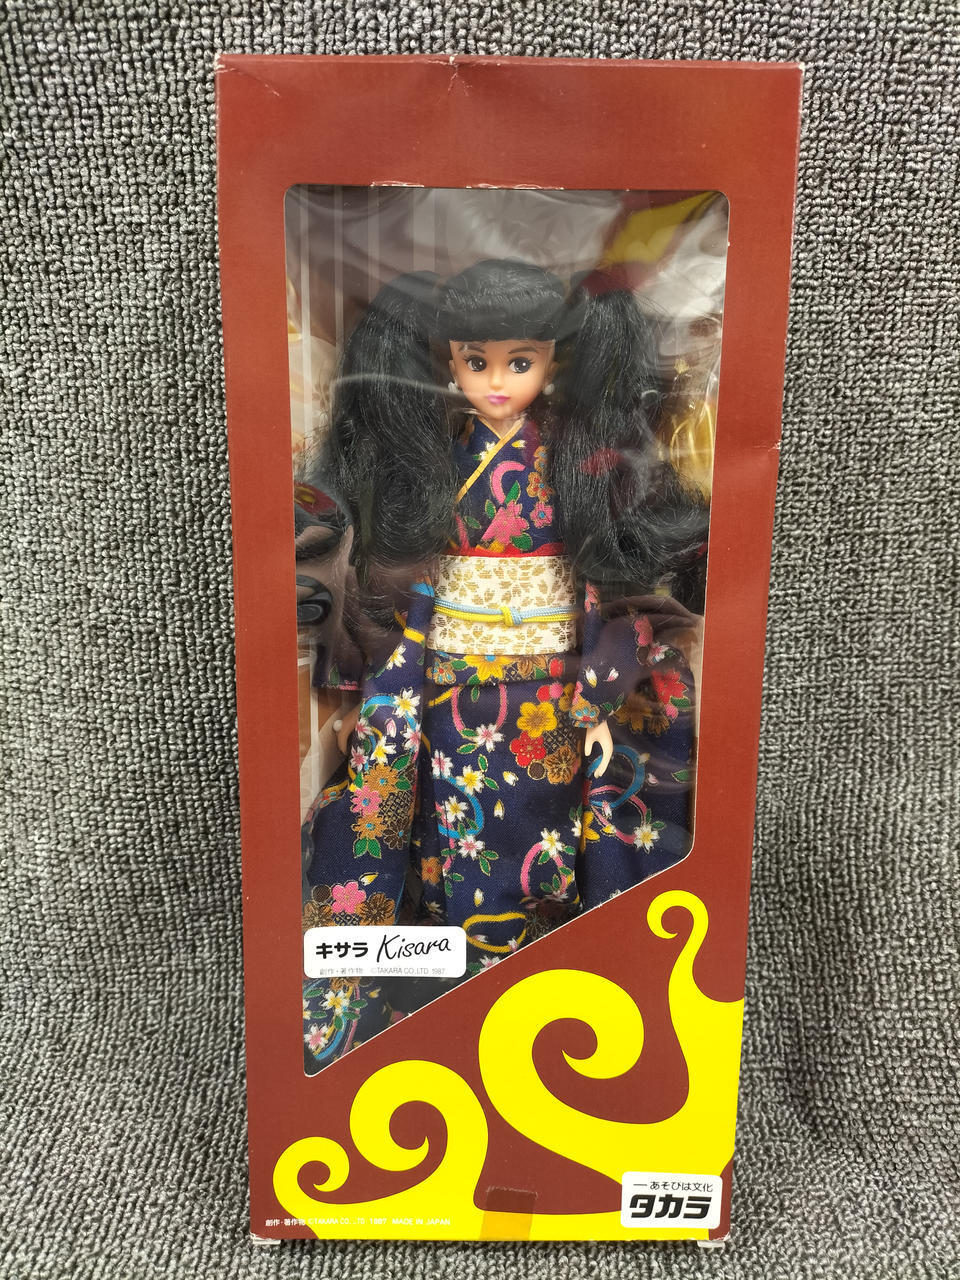 TAKARA TOTOCO Limited Edition Kisara Jenny Doll